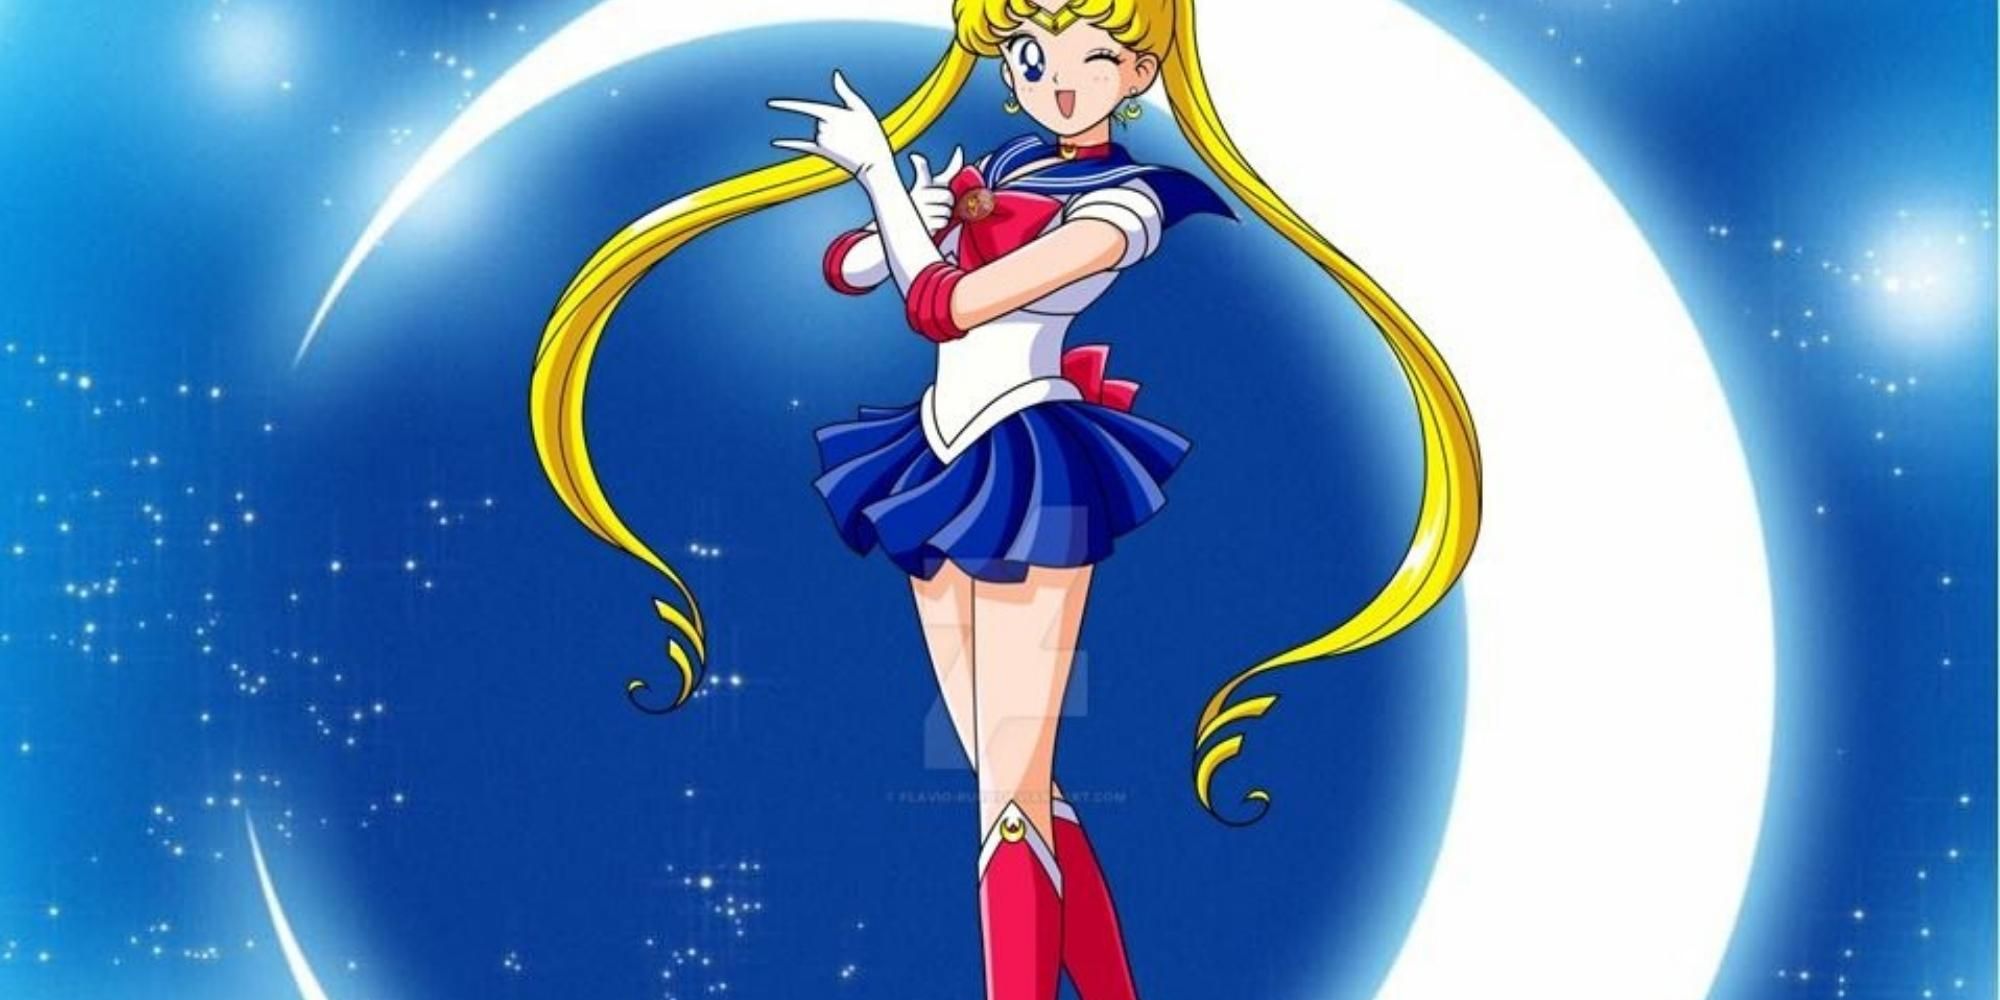 Usagi in Sailor Moon